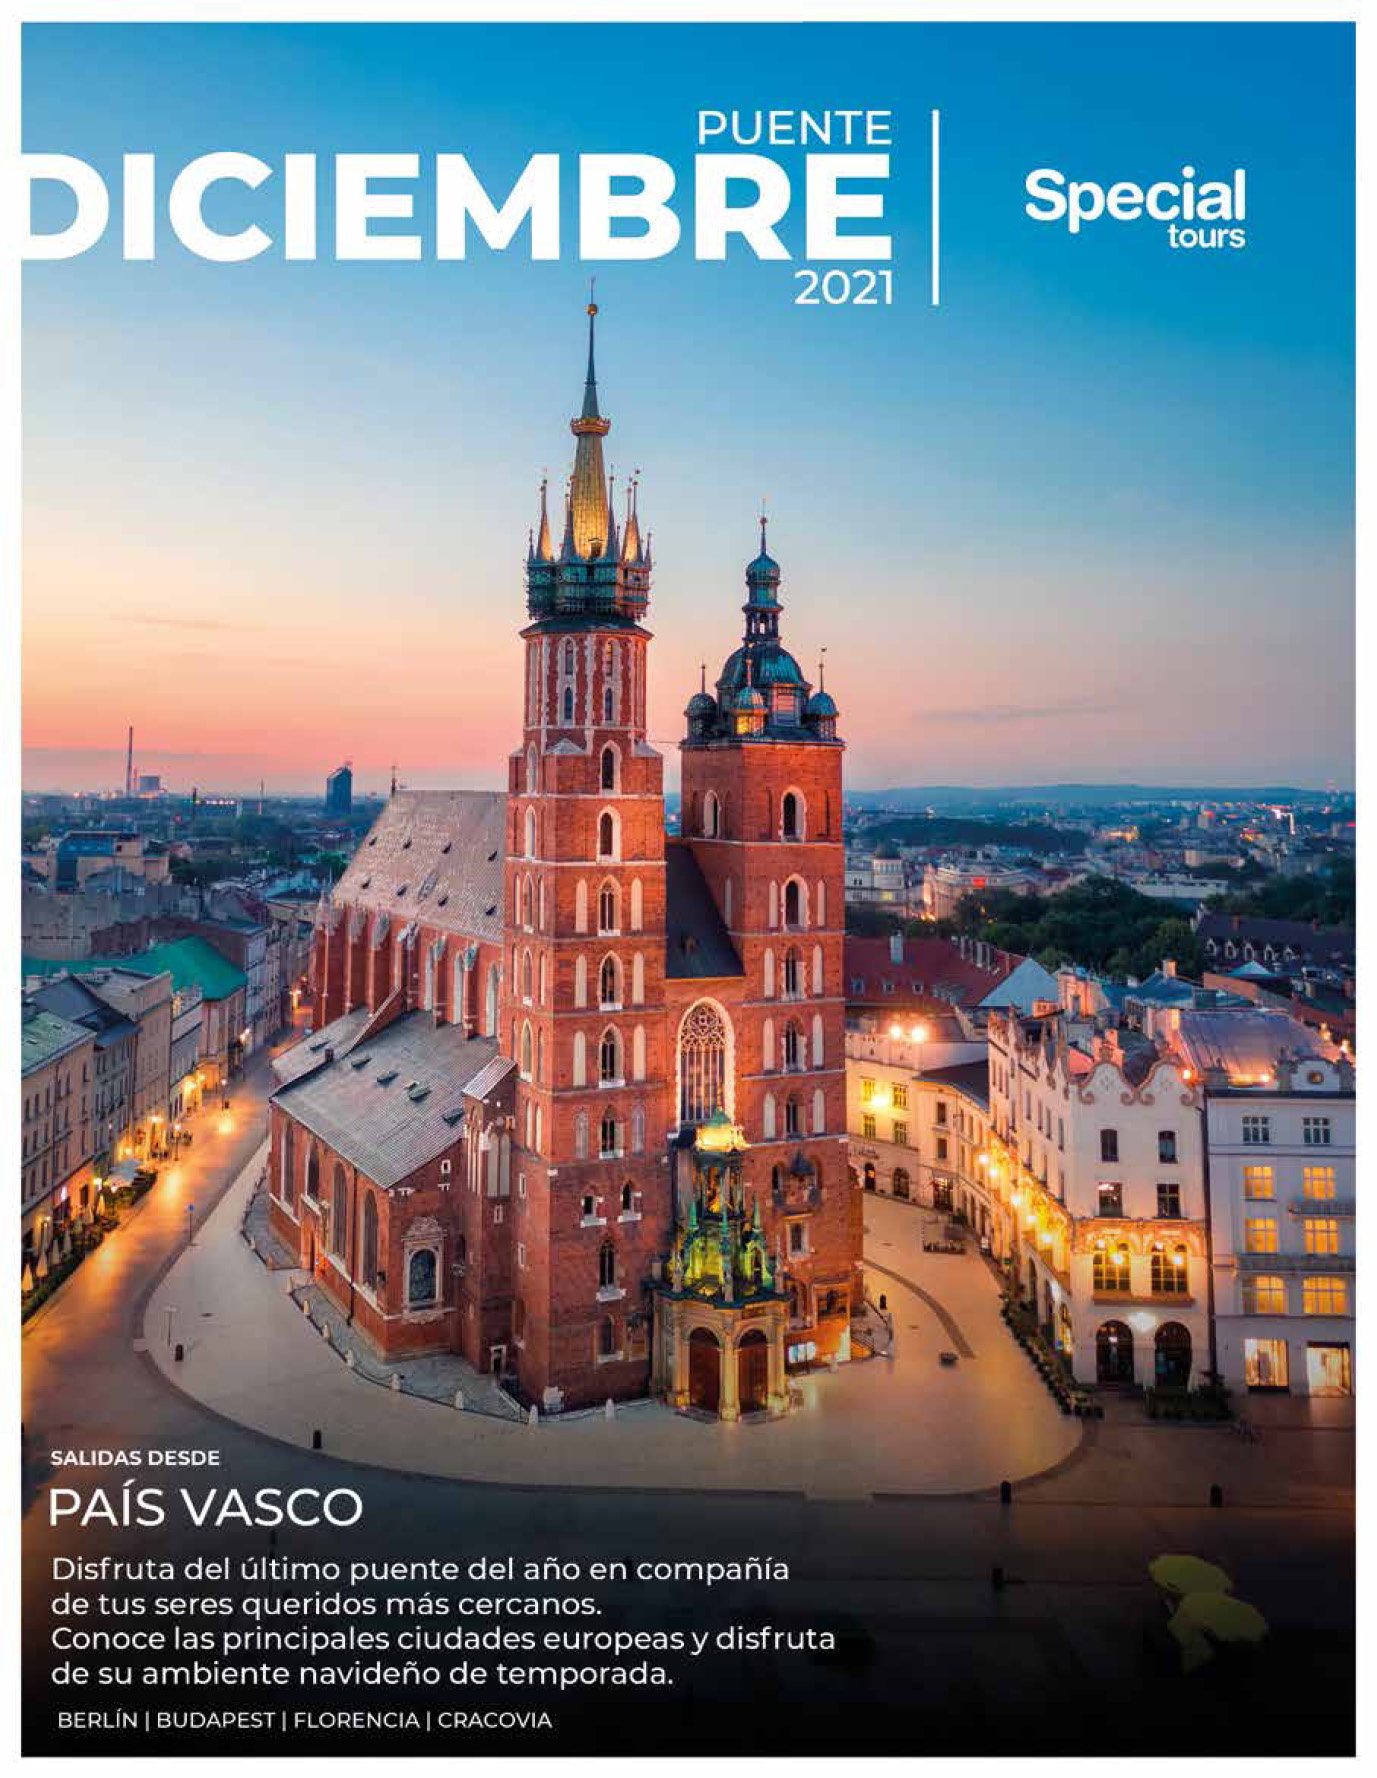 Catalogo Special Tours Puente de Diciembre 2021 en Europa salidas con vuelos directos desde Pais Vasco